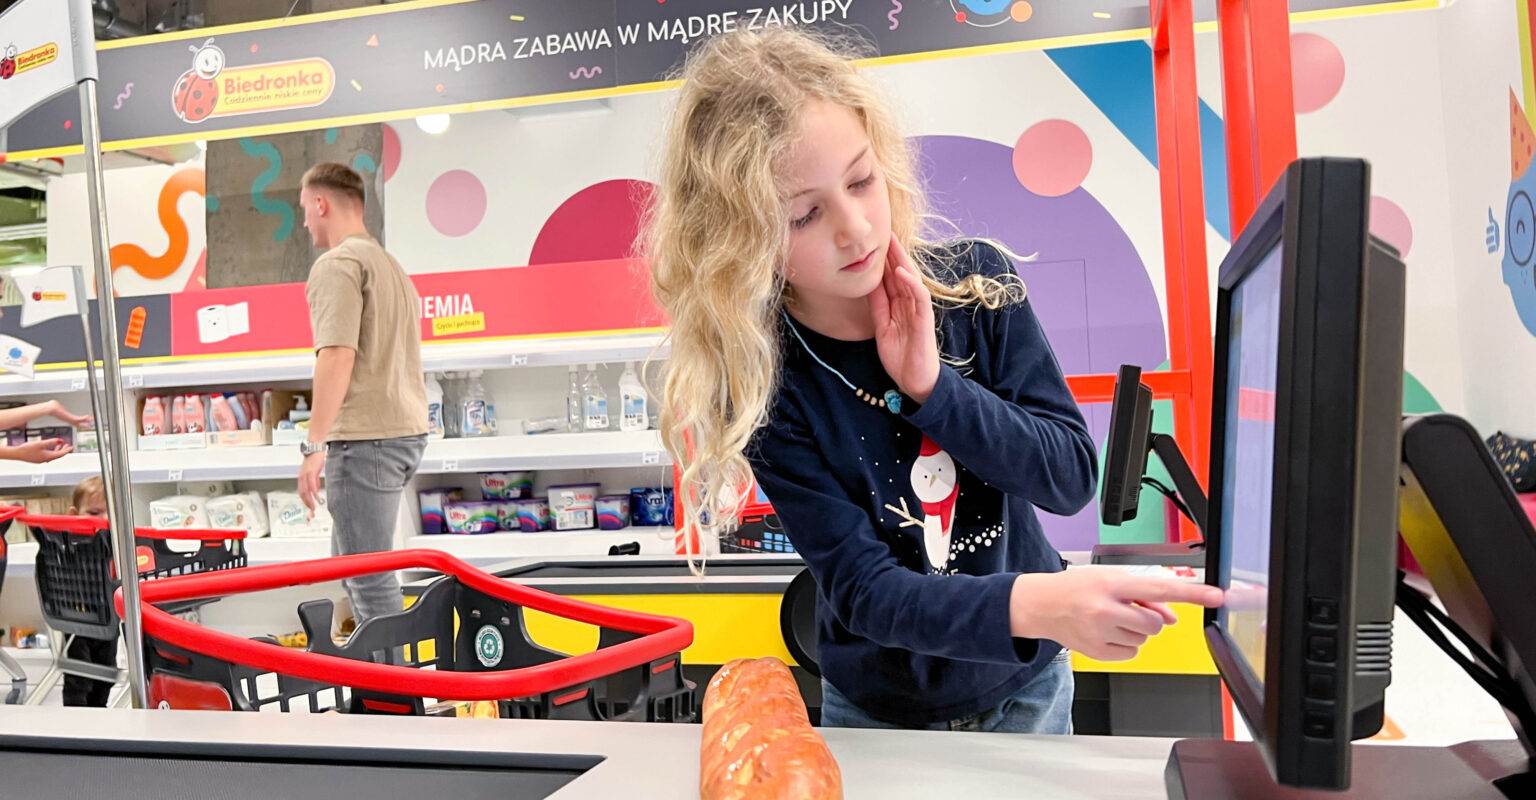 Smart Kids Planet to rewelacyjne miejsce dla dzieci w Warszawie - centrum mądrej zabawy!